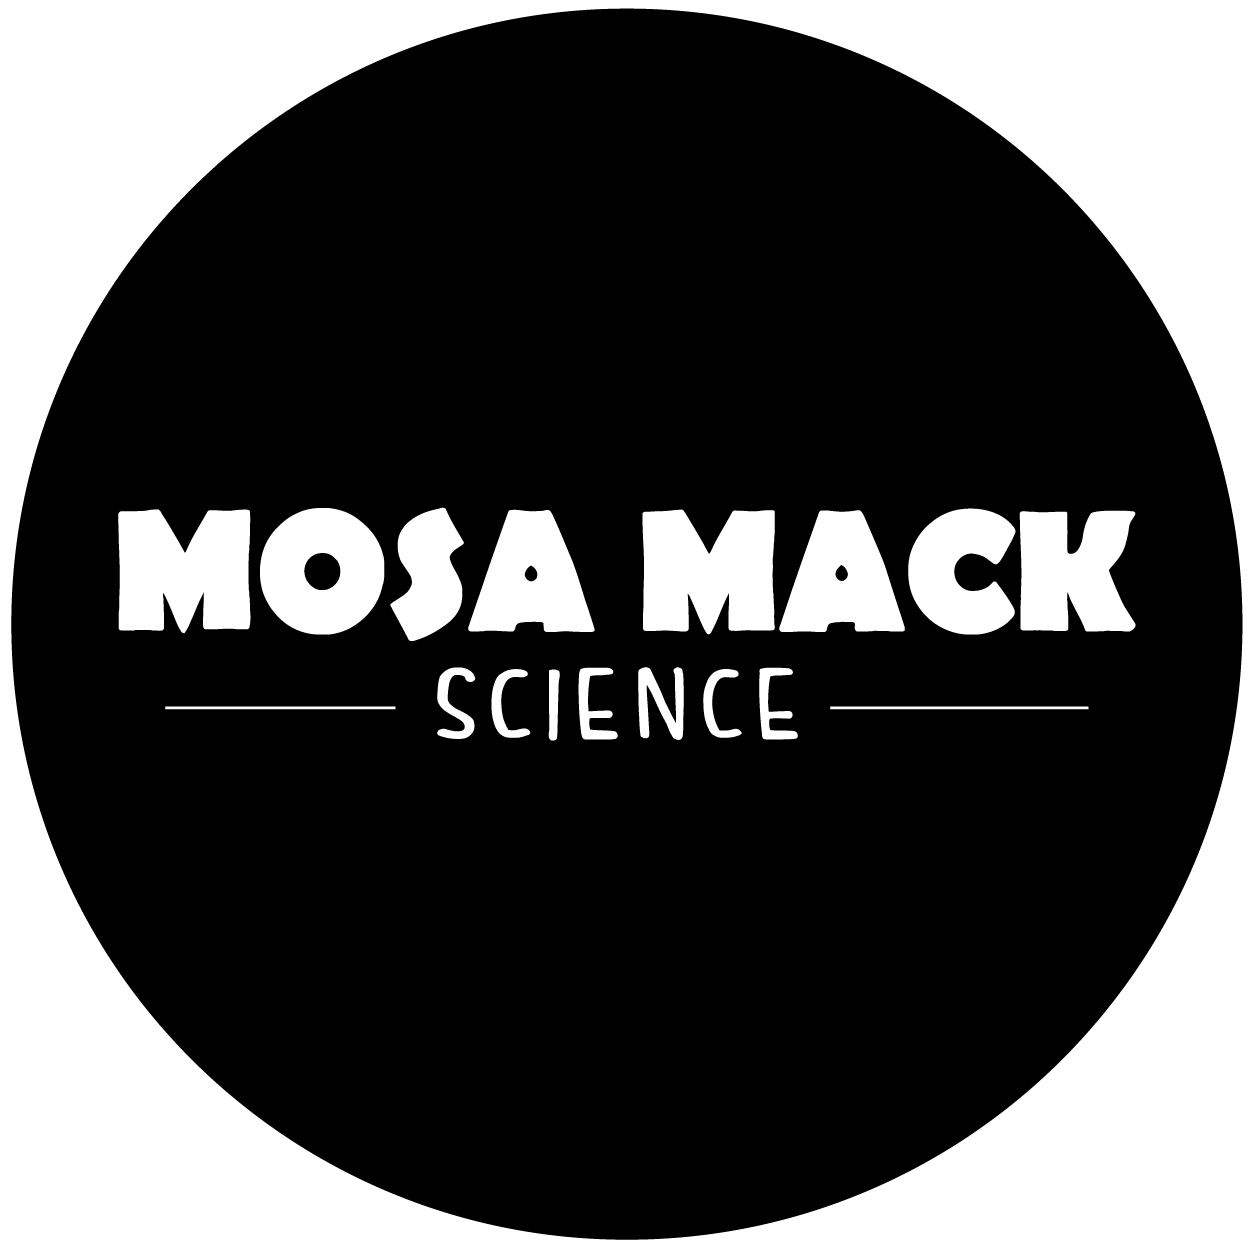 Mosa Mack team